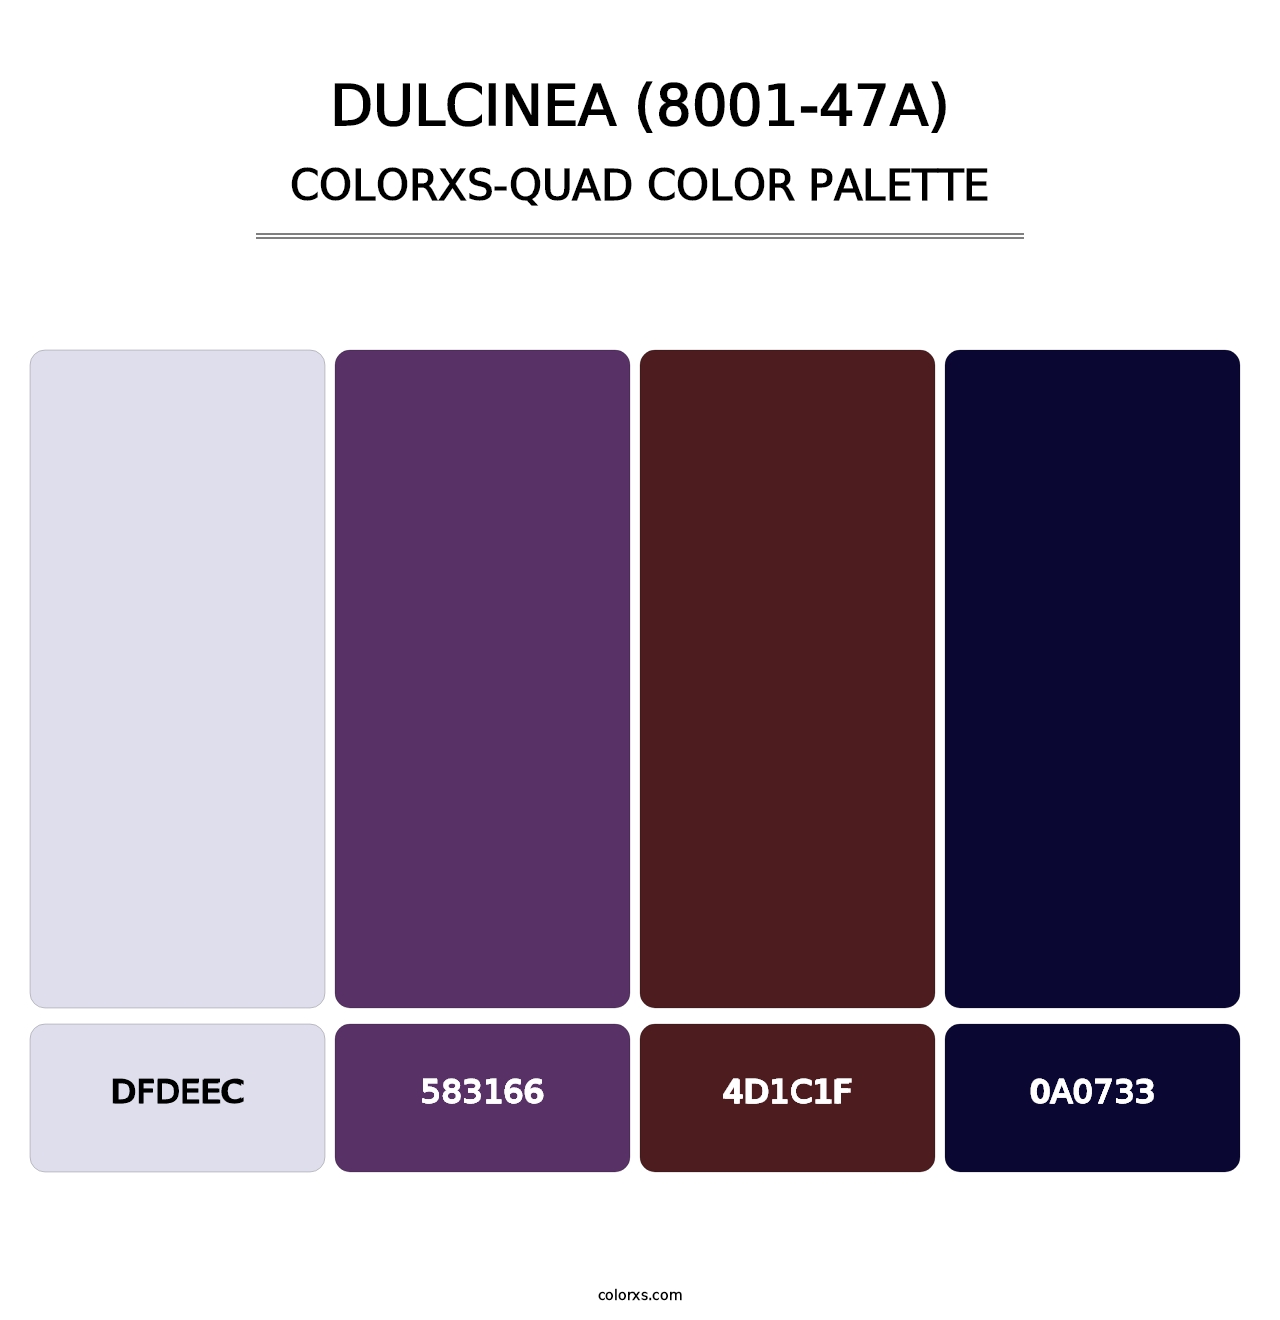 Dulcinea (8001-47A) - Colorxs Quad Palette